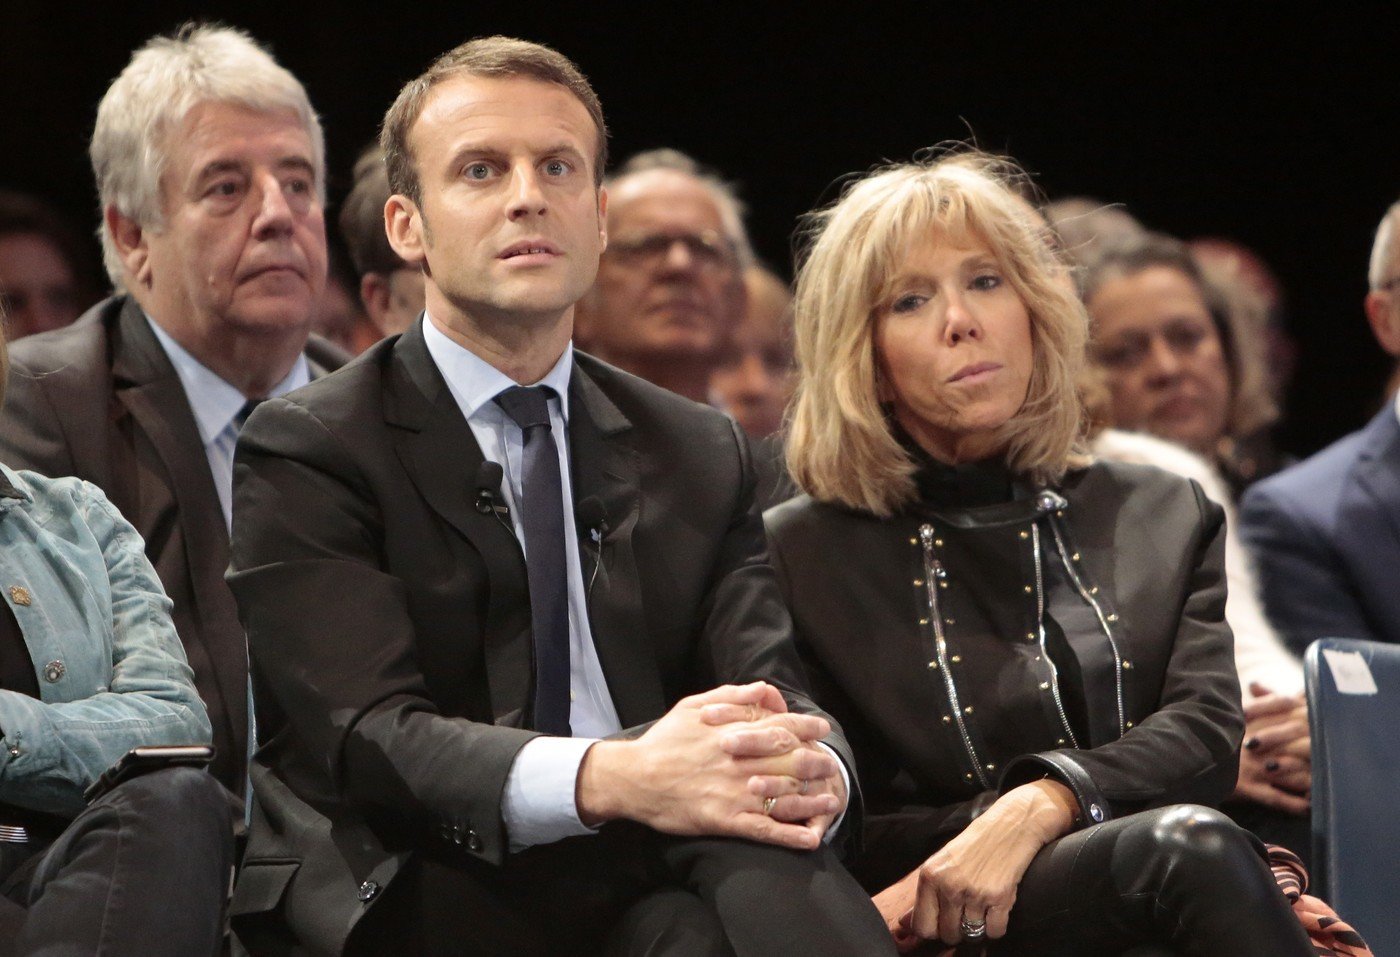 Кто жена макрона президента франции. Женапрезидент Франции Мак. Жена призелинта Франции ма. Жена президента Макрона.